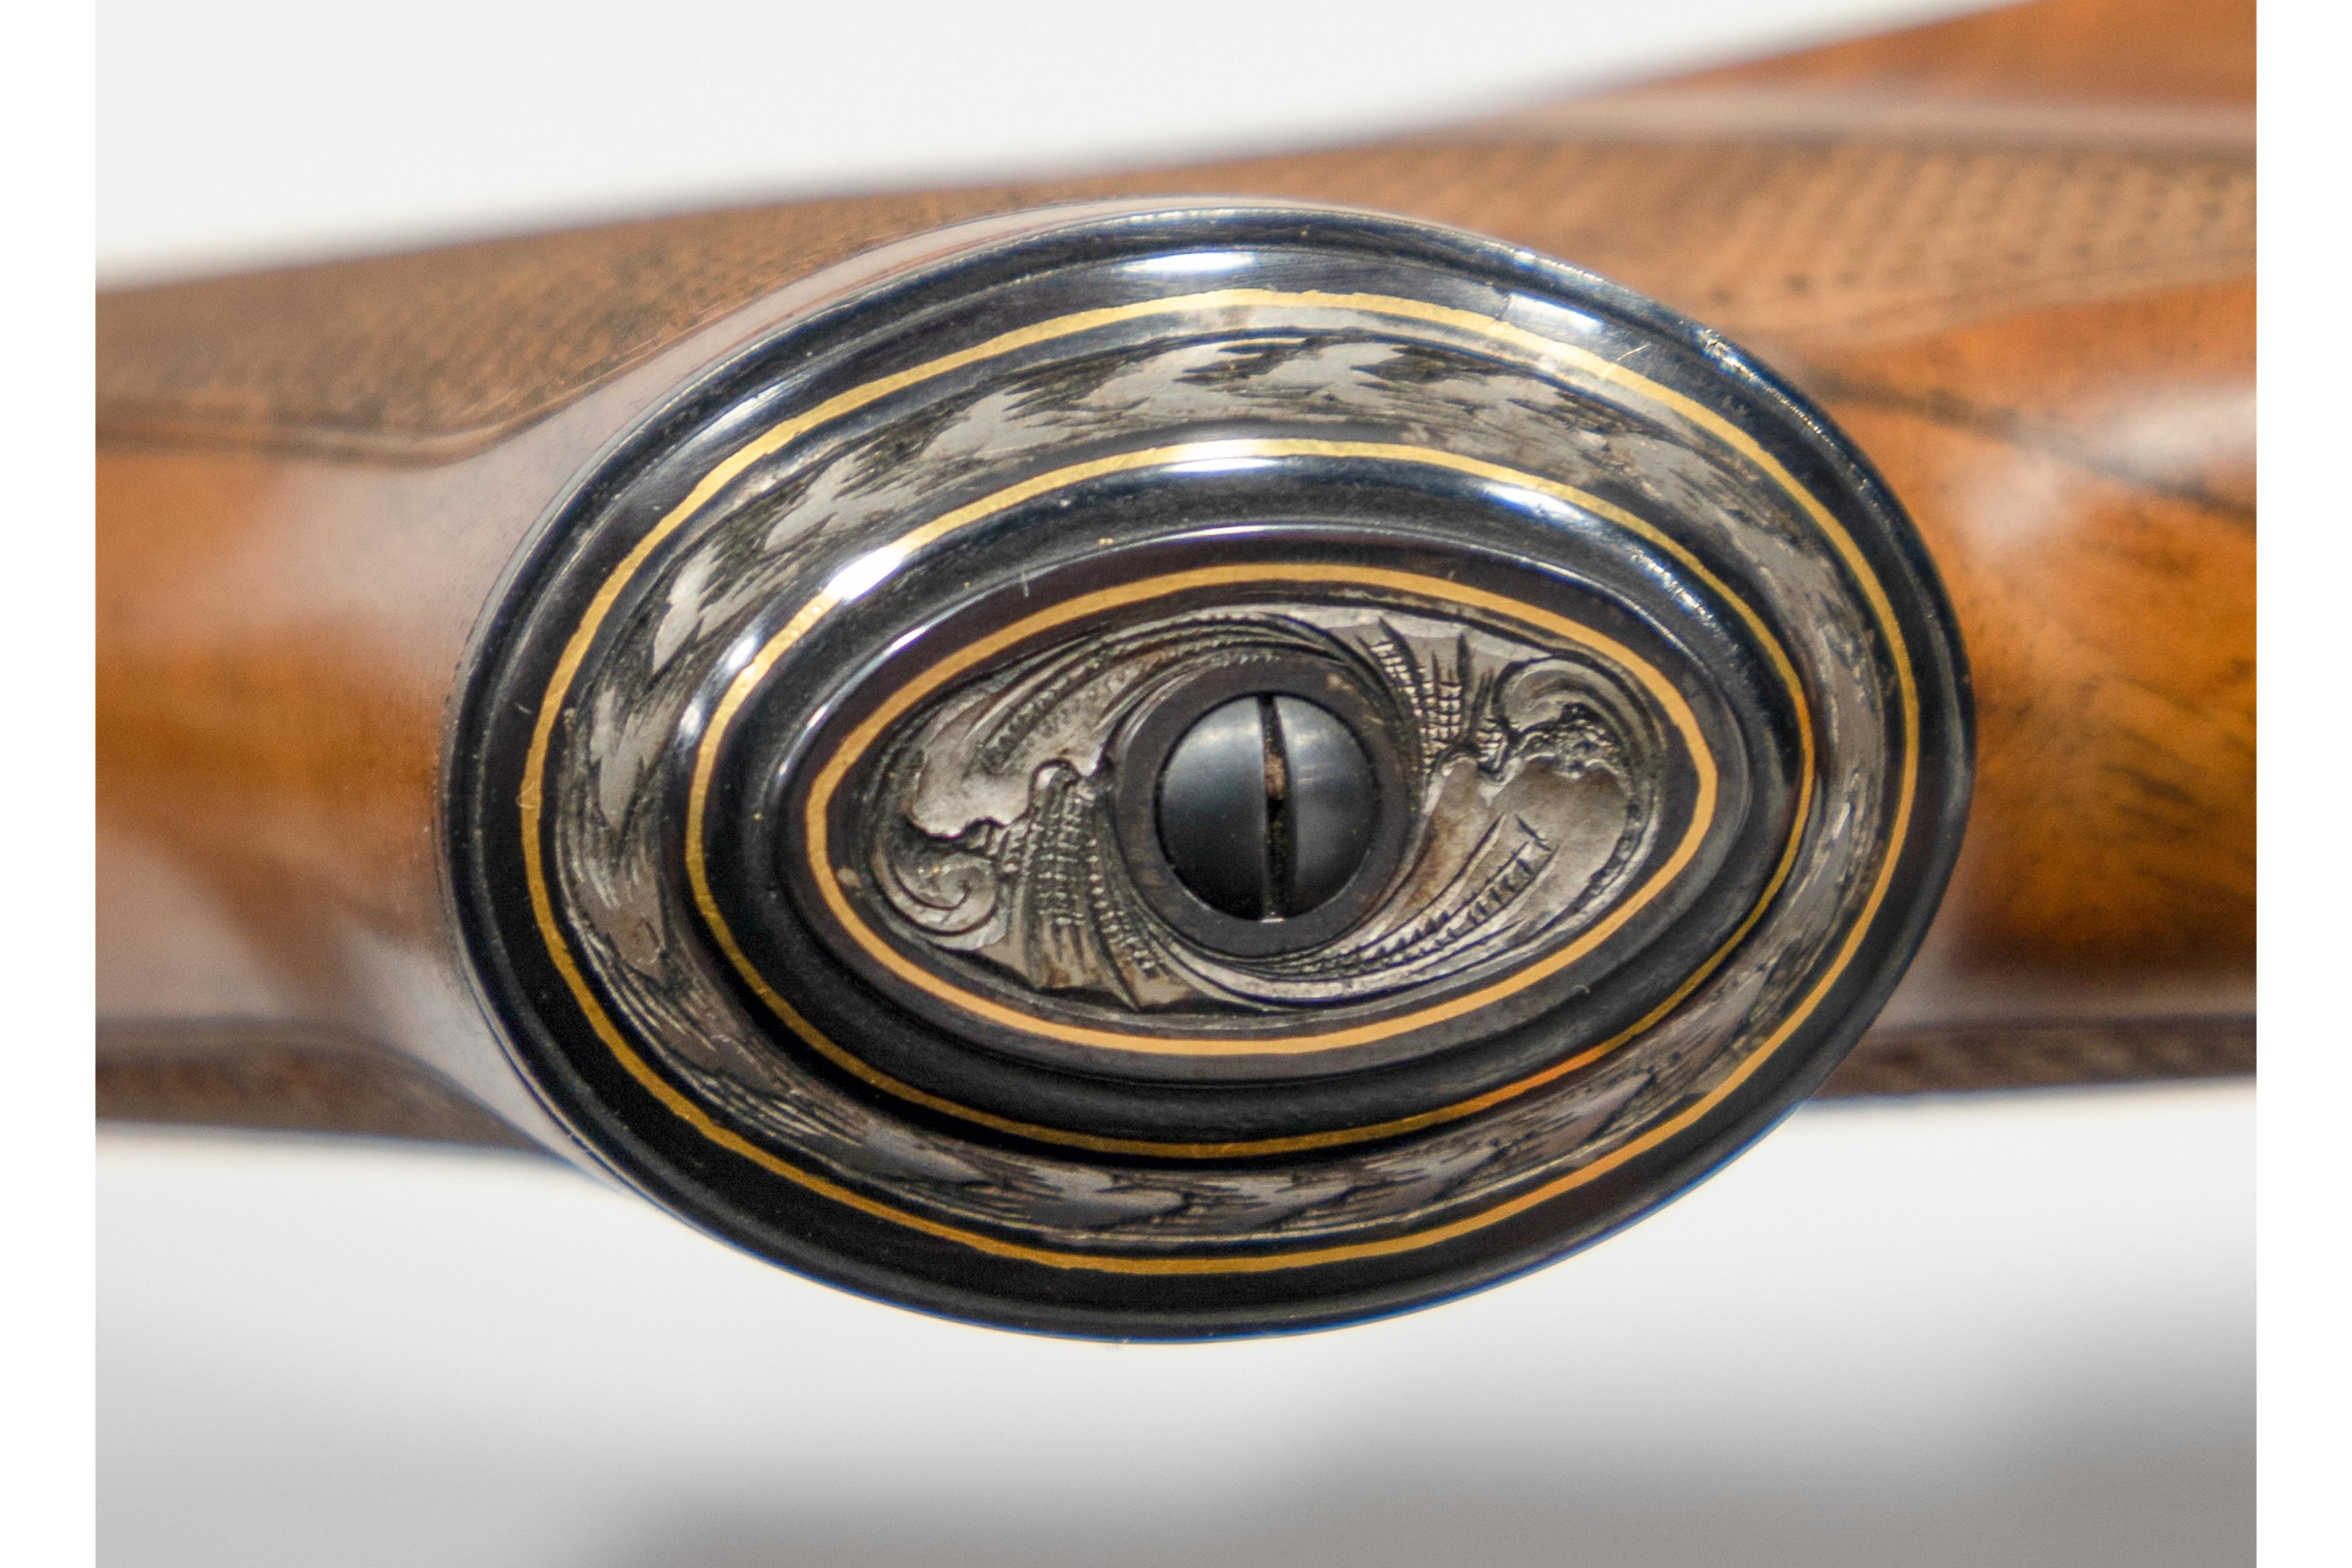 Ben Shostle Master Engraved Ruger No. 1 6mm Remington